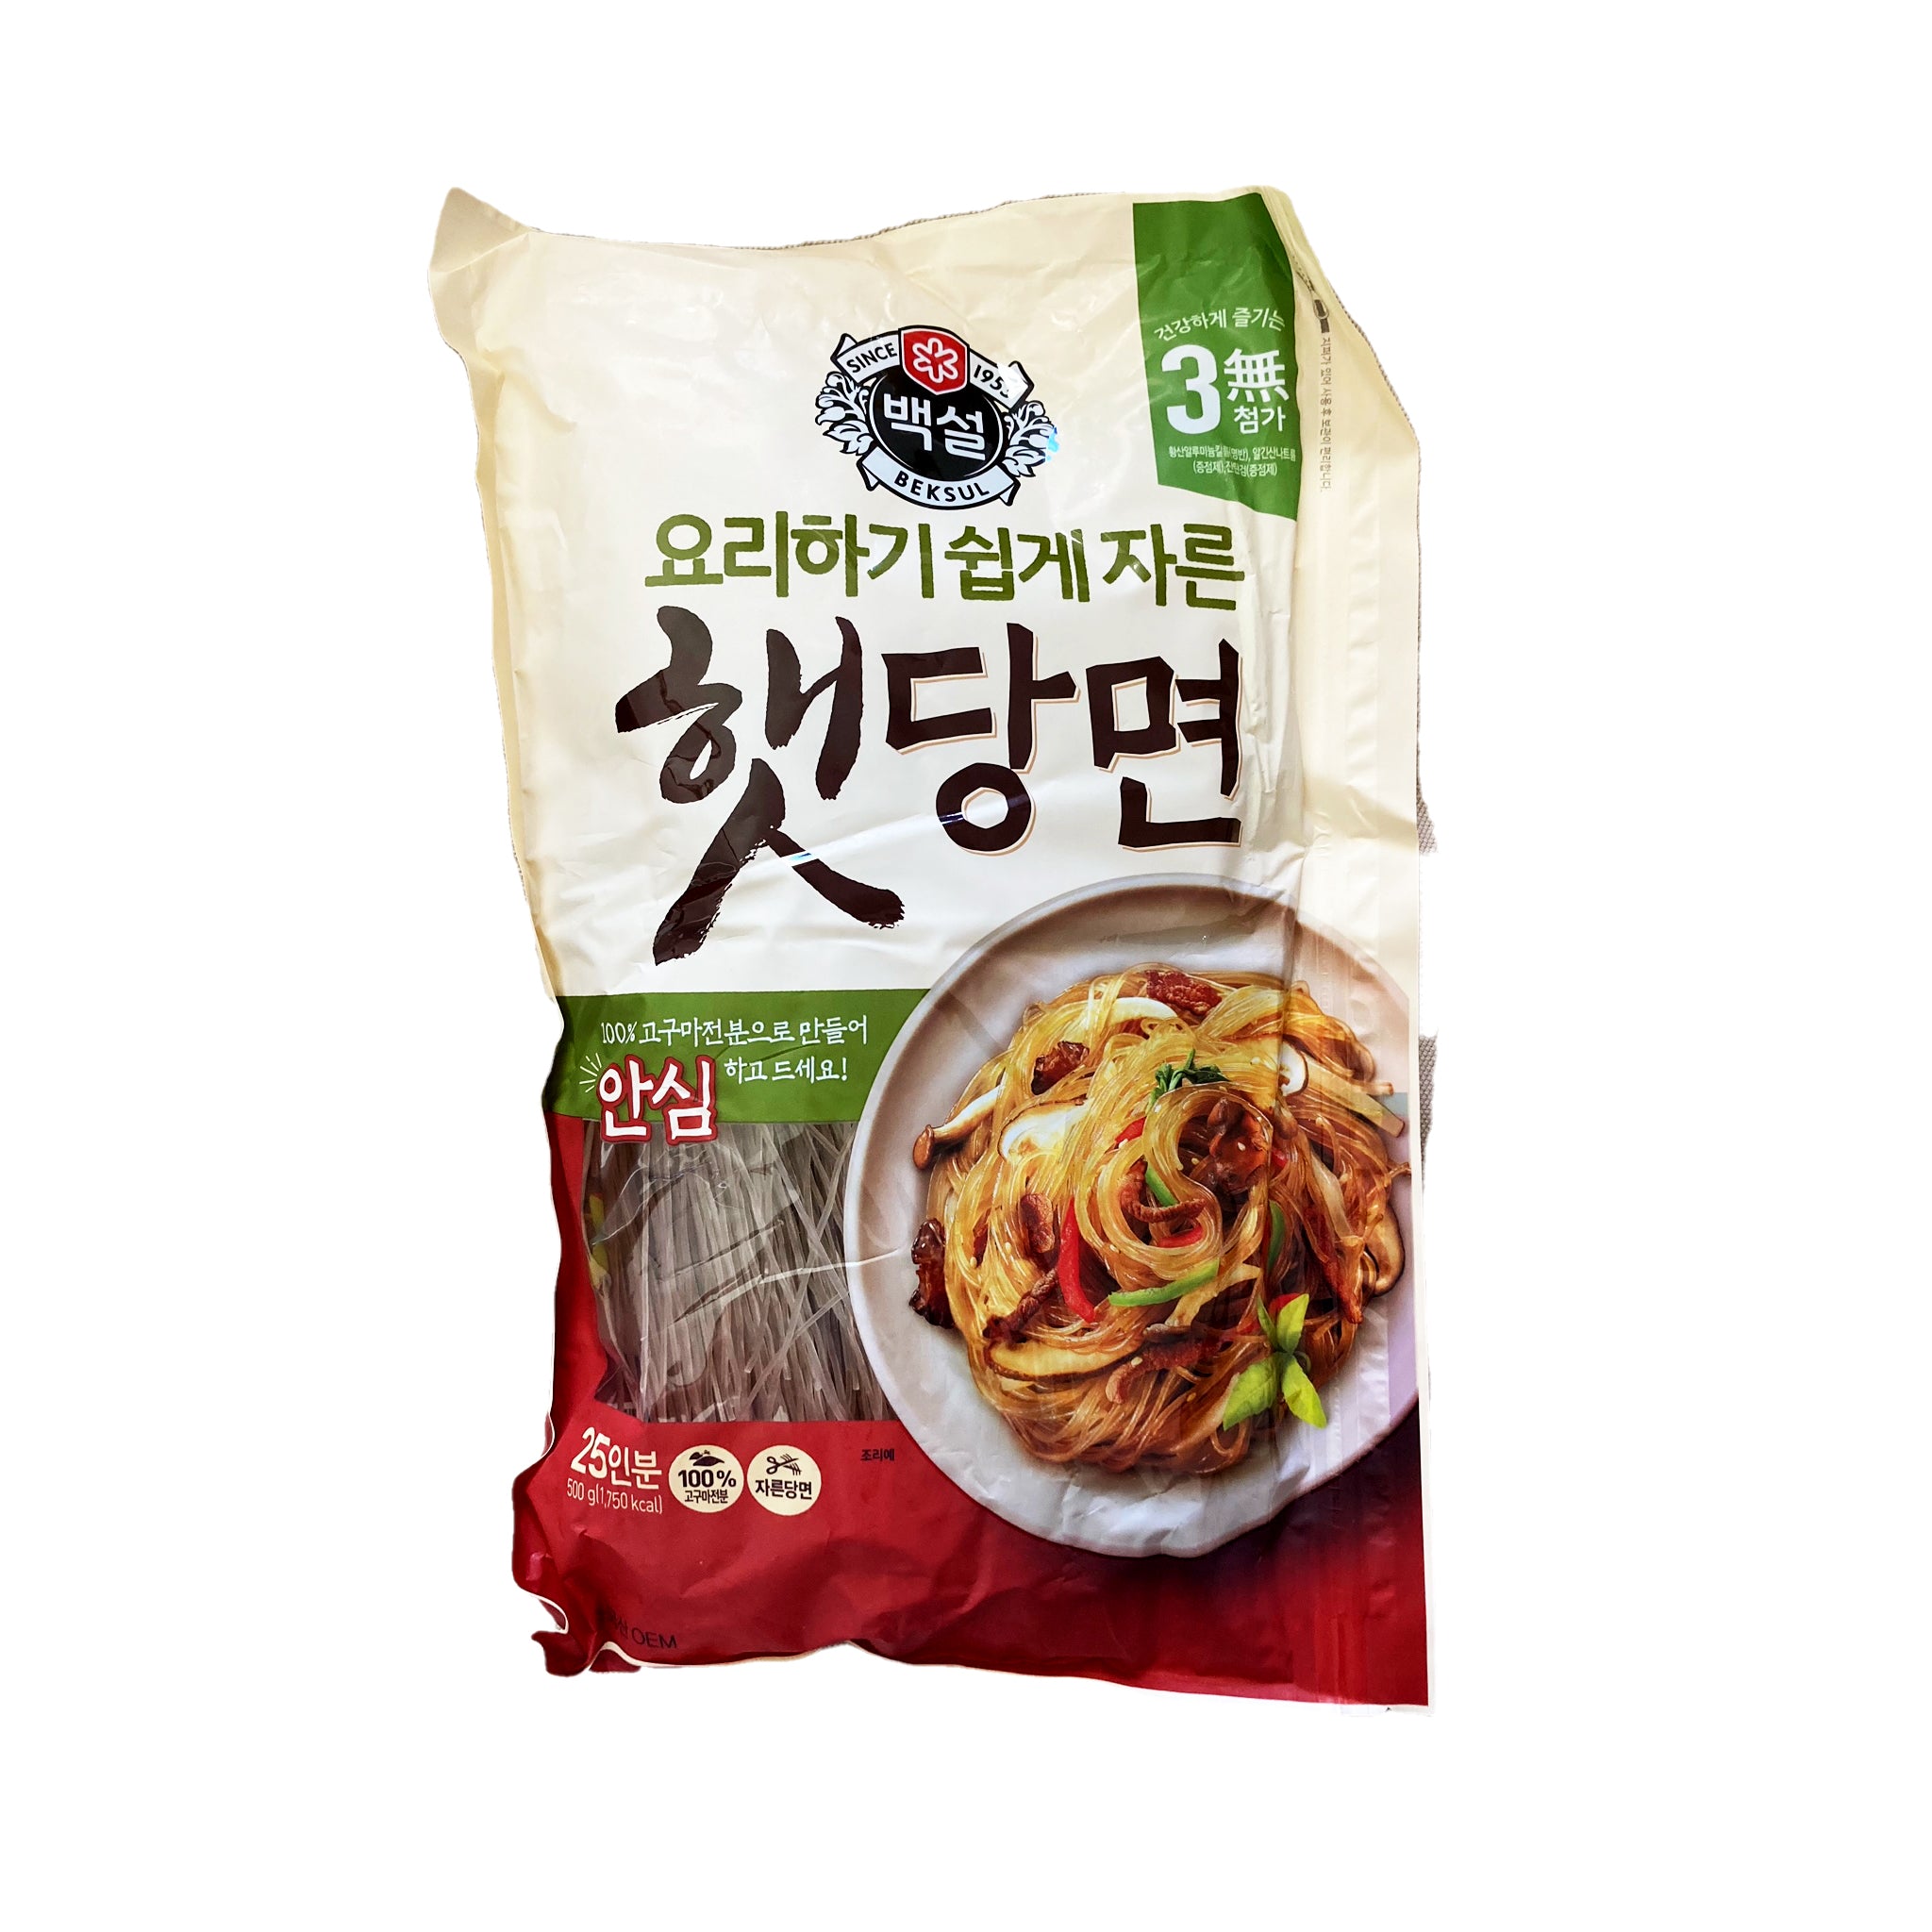 Sweet potato noodles איטריות בטטה קוריאניות טעימים